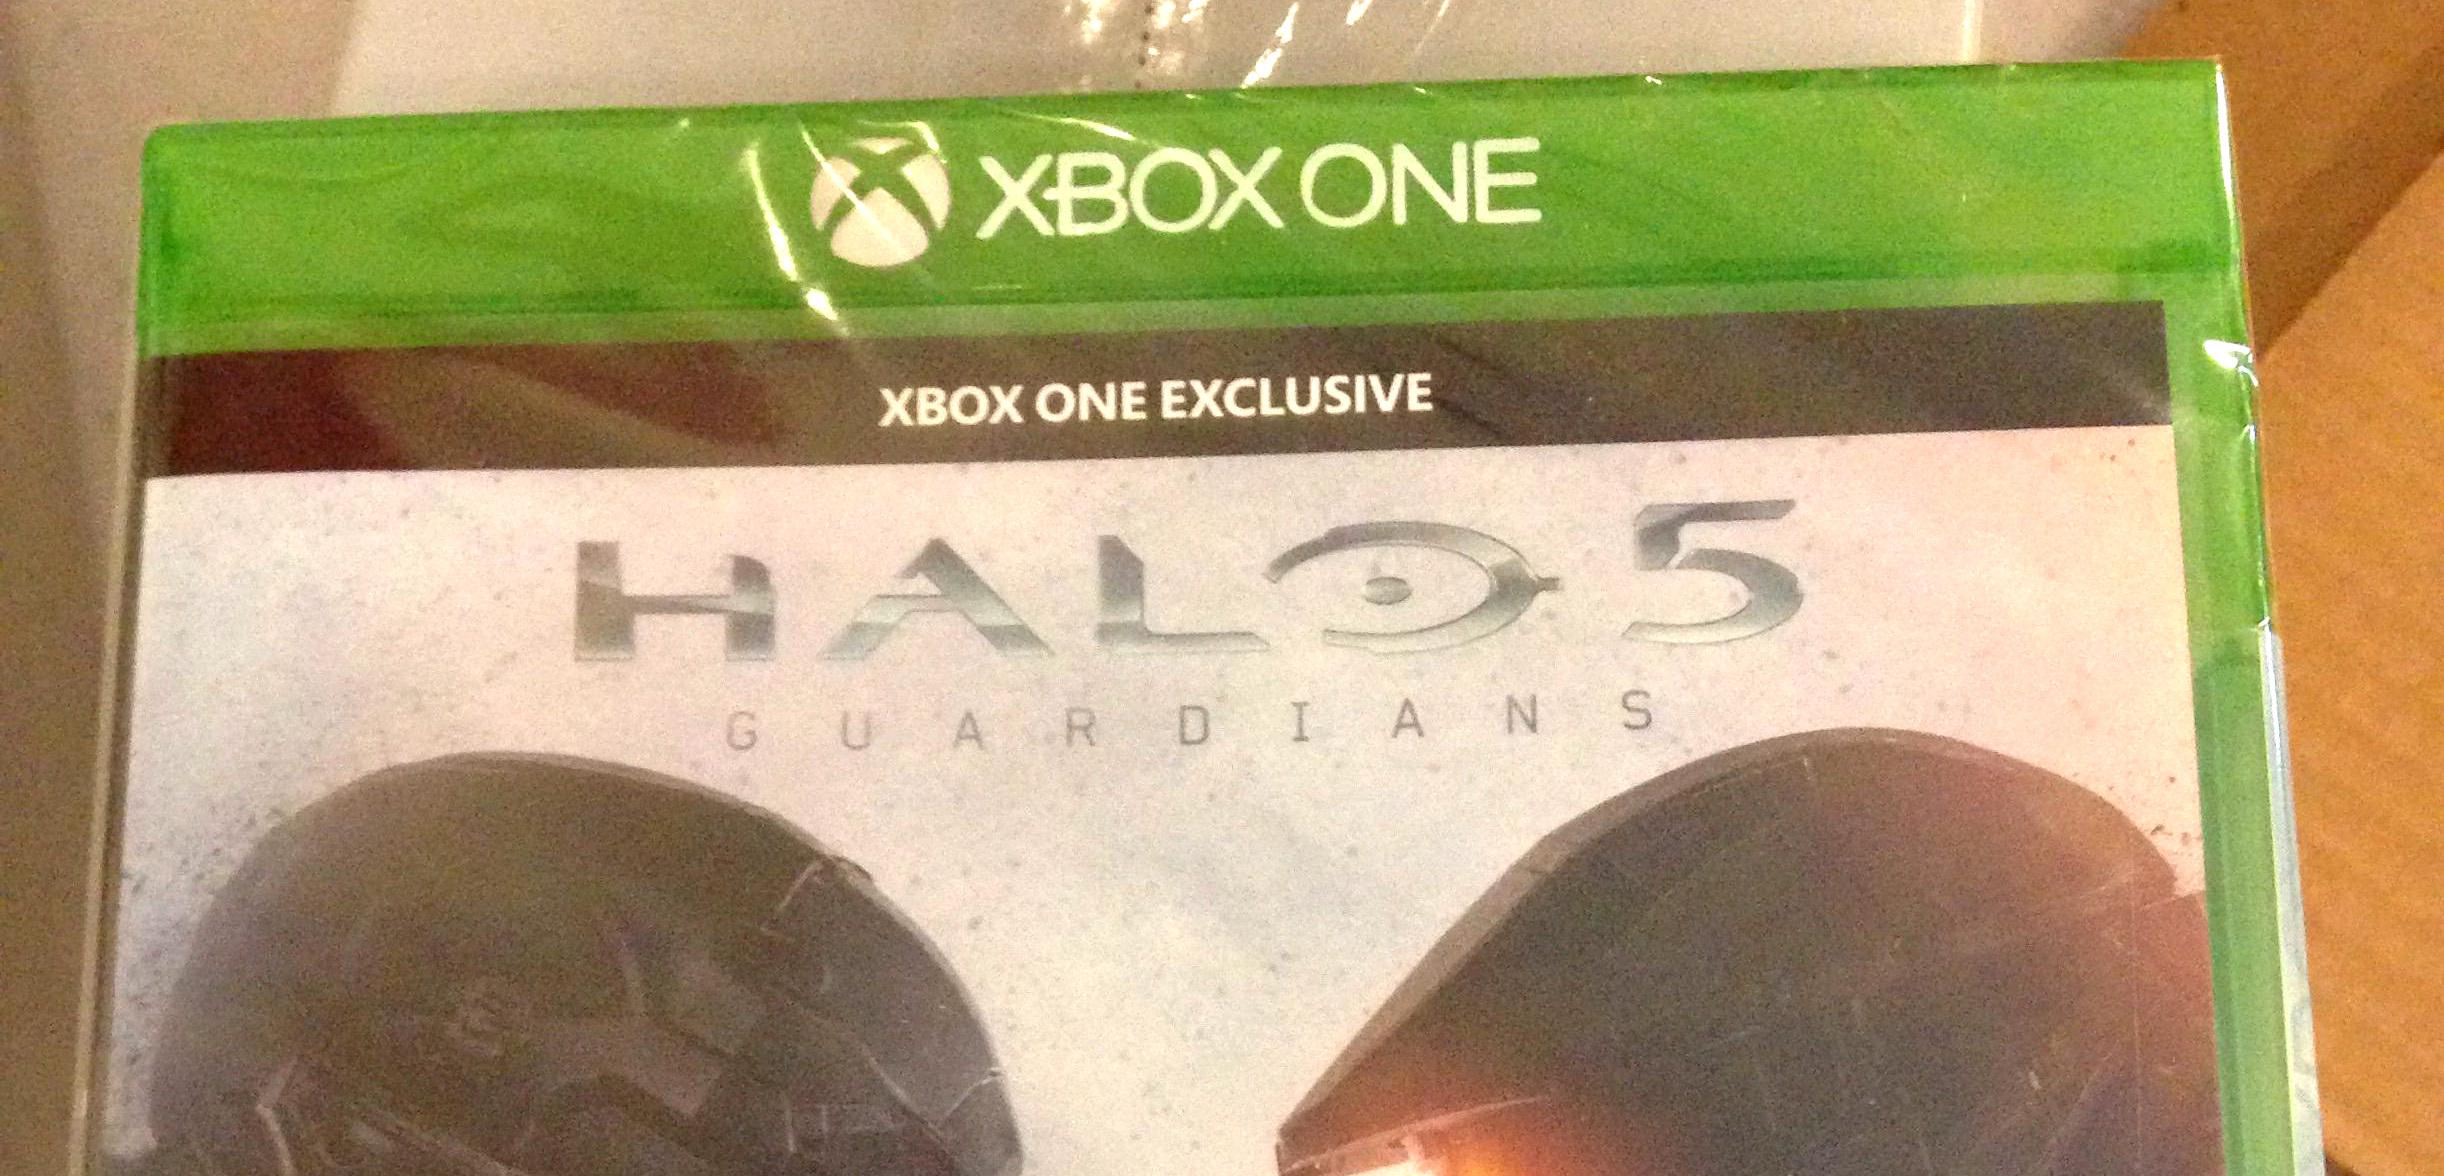 Ktoś dorwał się do pudełkowej wersji Halo 5 - instalacja może zająć 60GB